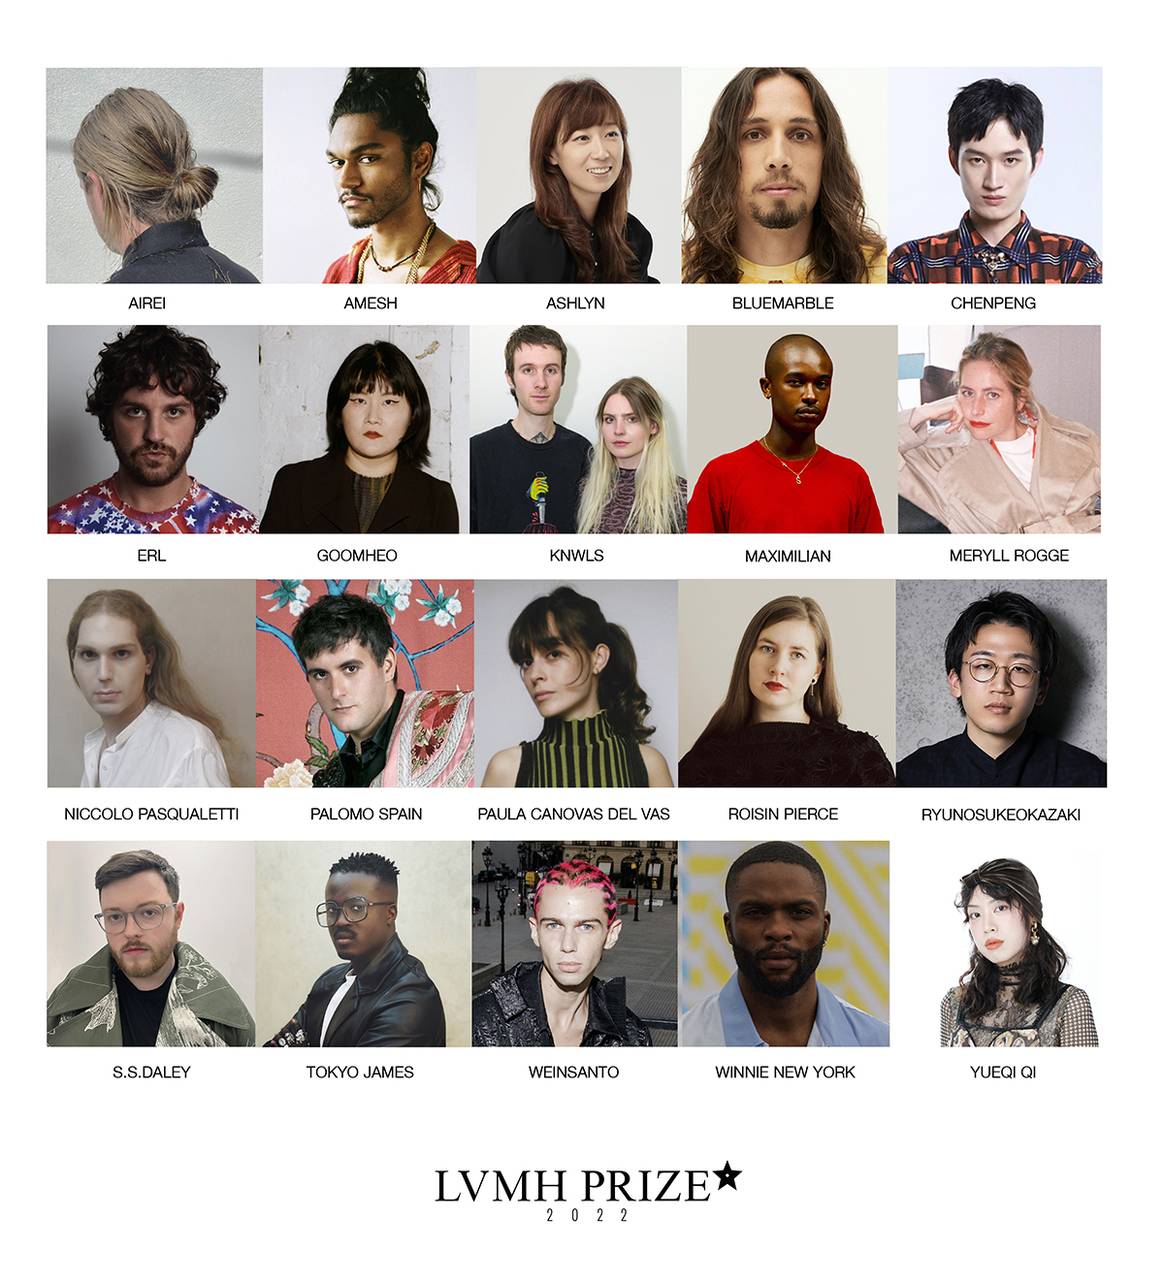 Photo Credits: Cartel de los 20 semifinalistas escogidos al LVMH Prize de 2022. LVMH, fotografía de cortesía.